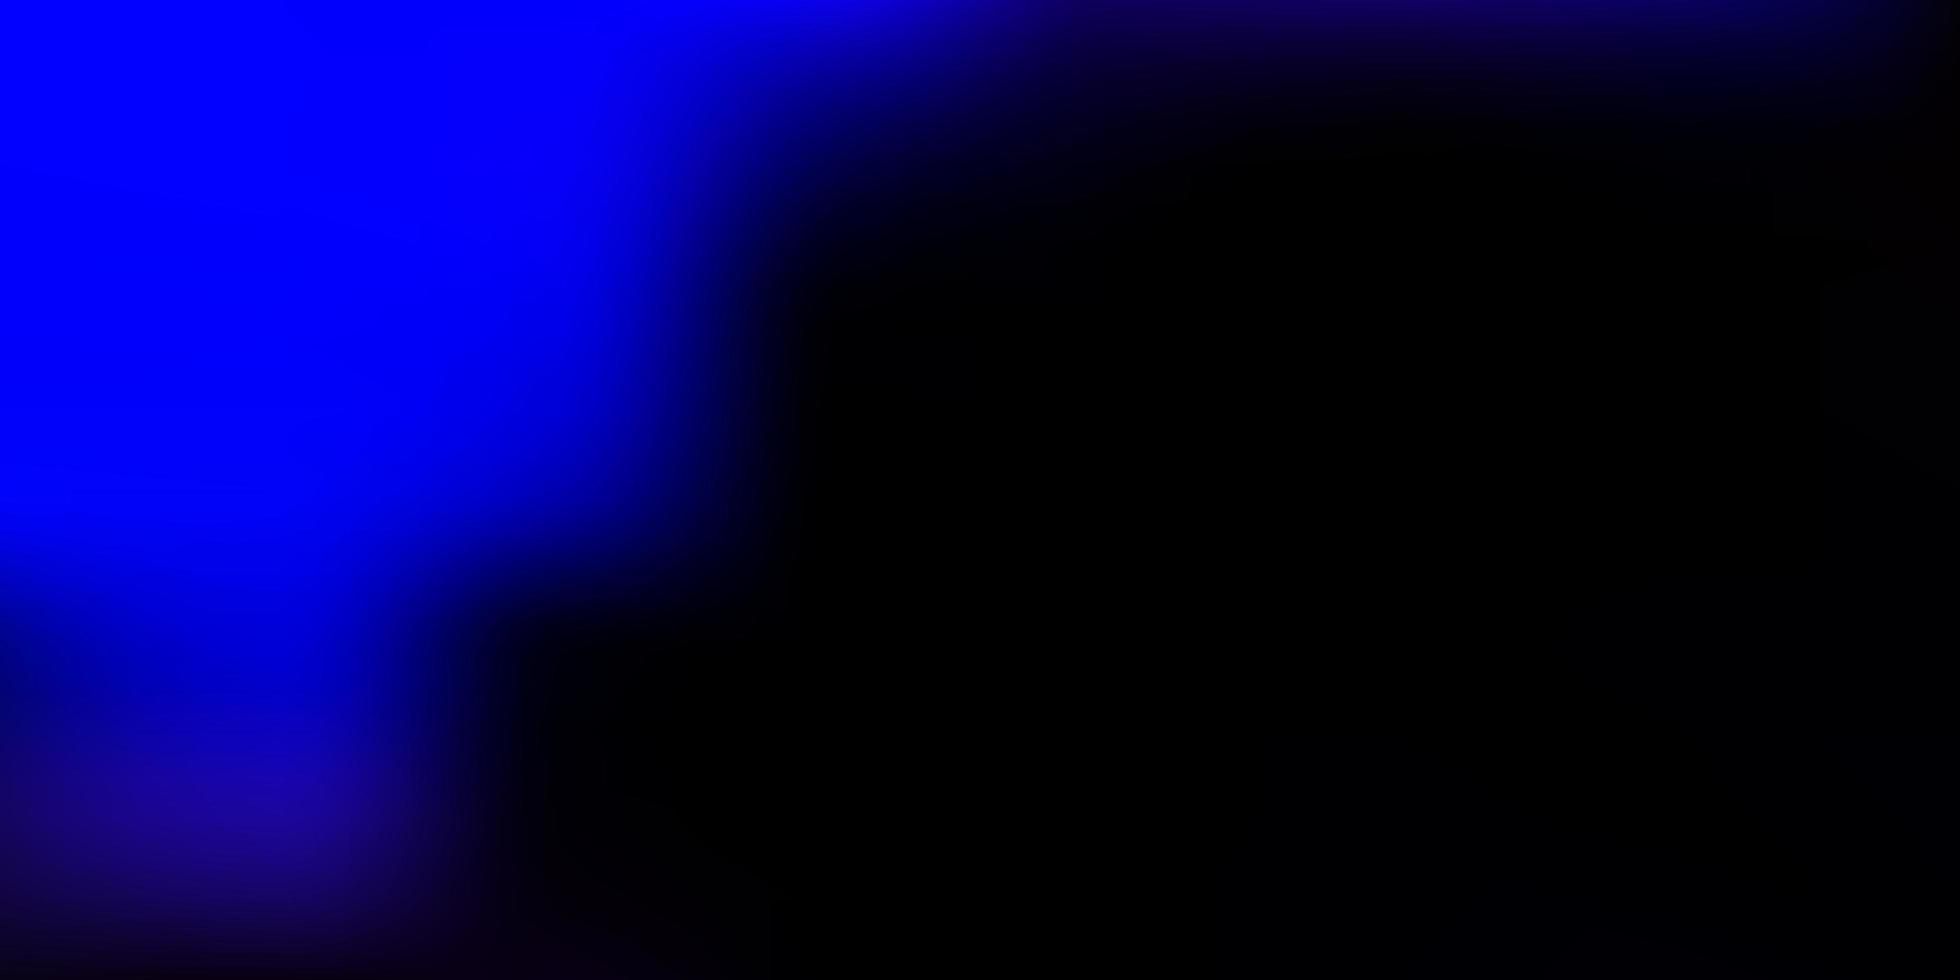 mörkrosa, blå vektor oskärpa bakgrund.